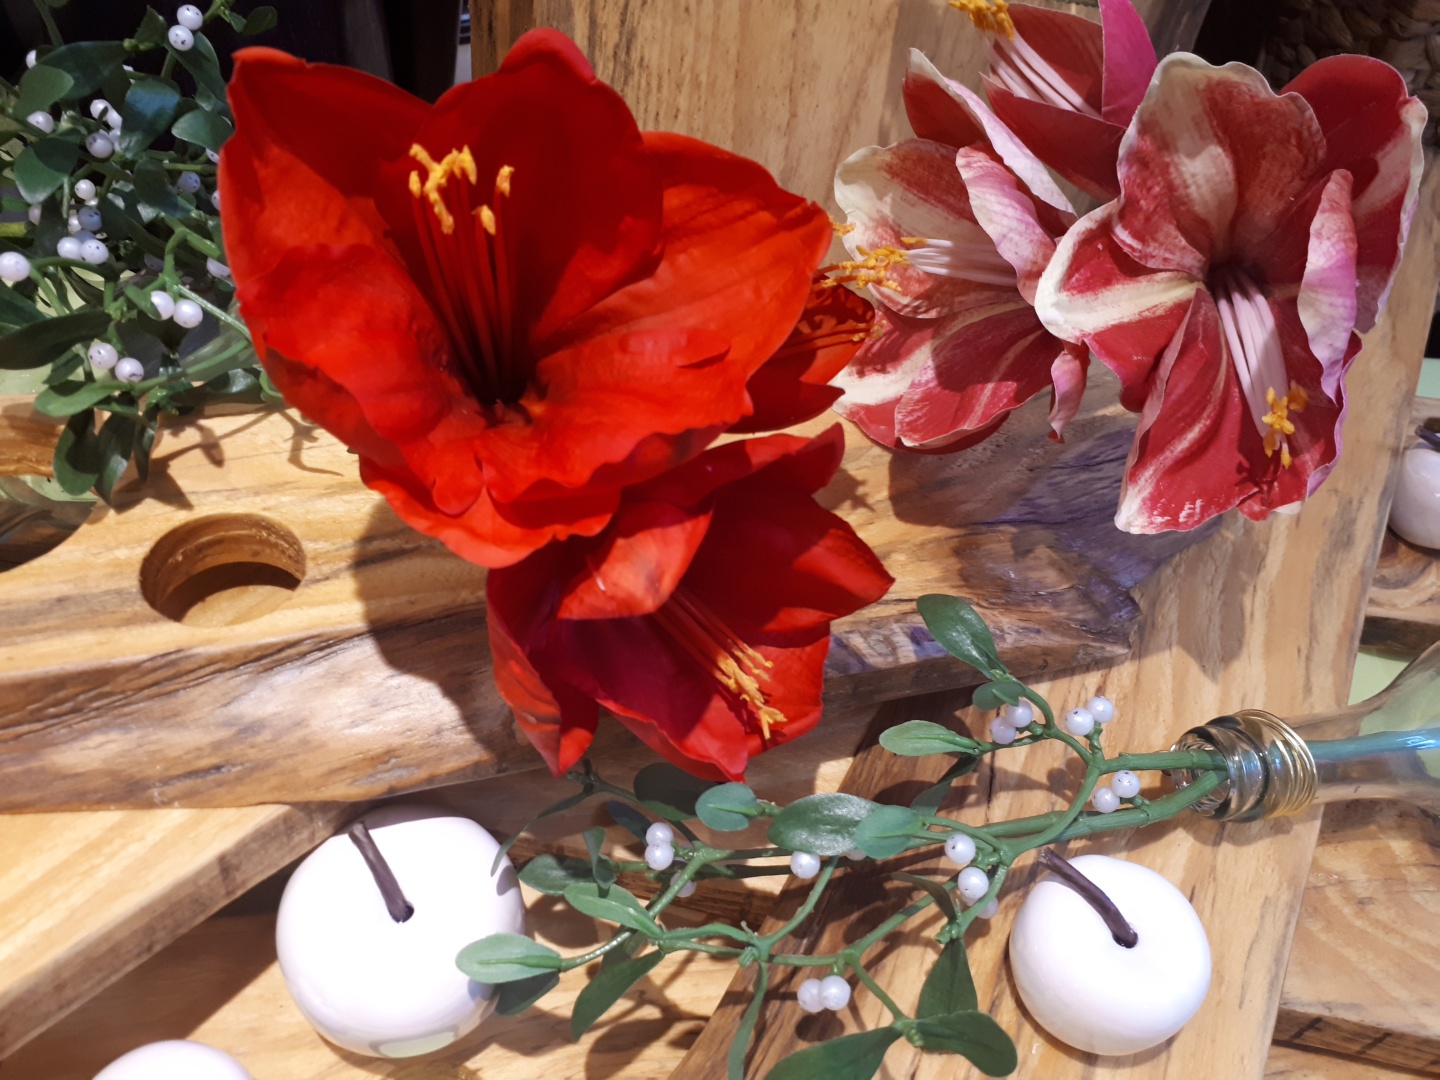 rote künstliche Amaryllis Blüten auf Holzbrett